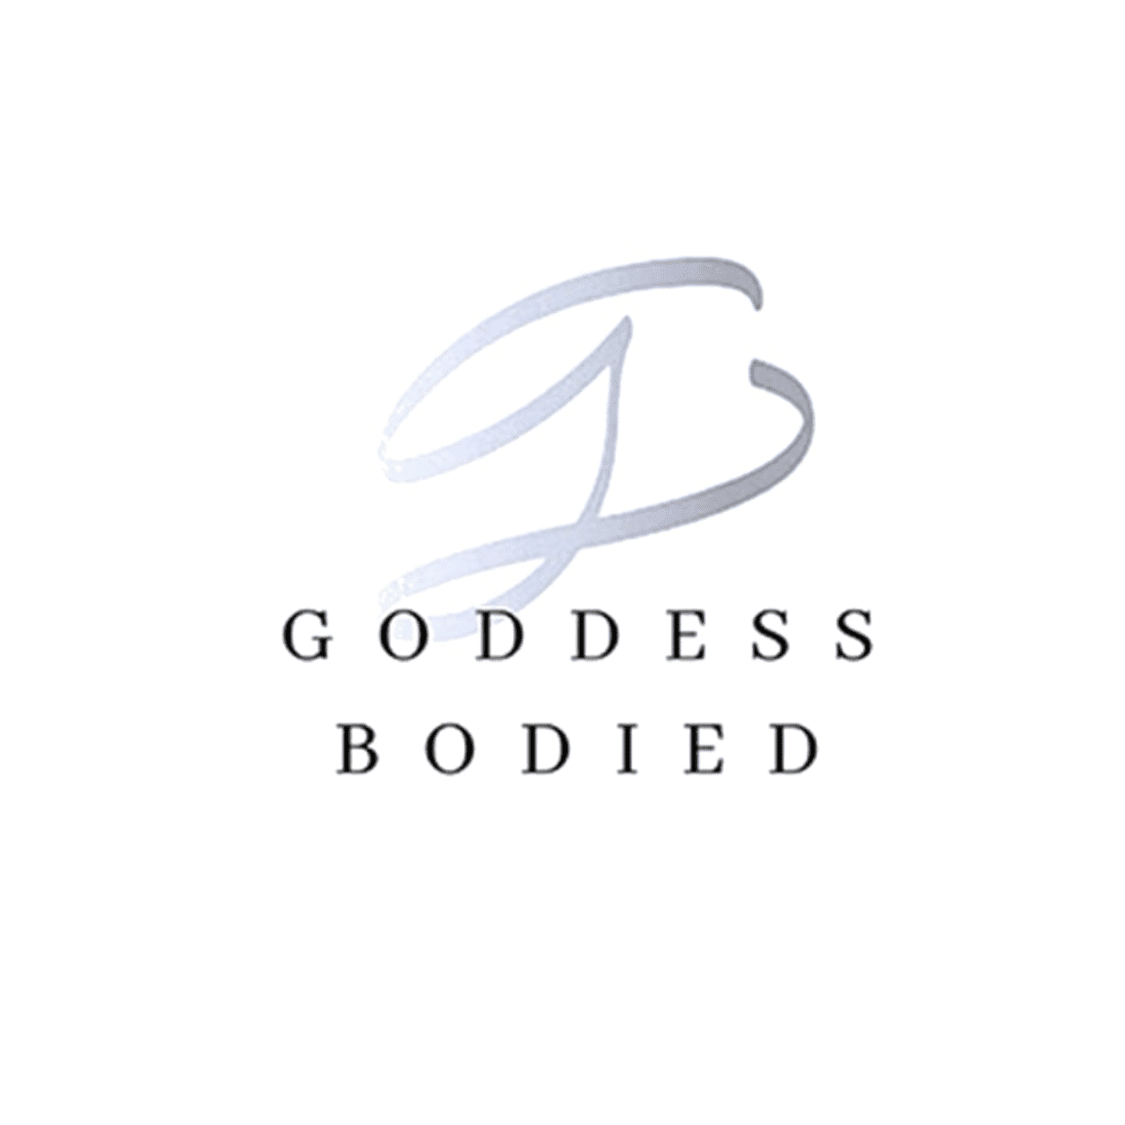 Goddess Bodied